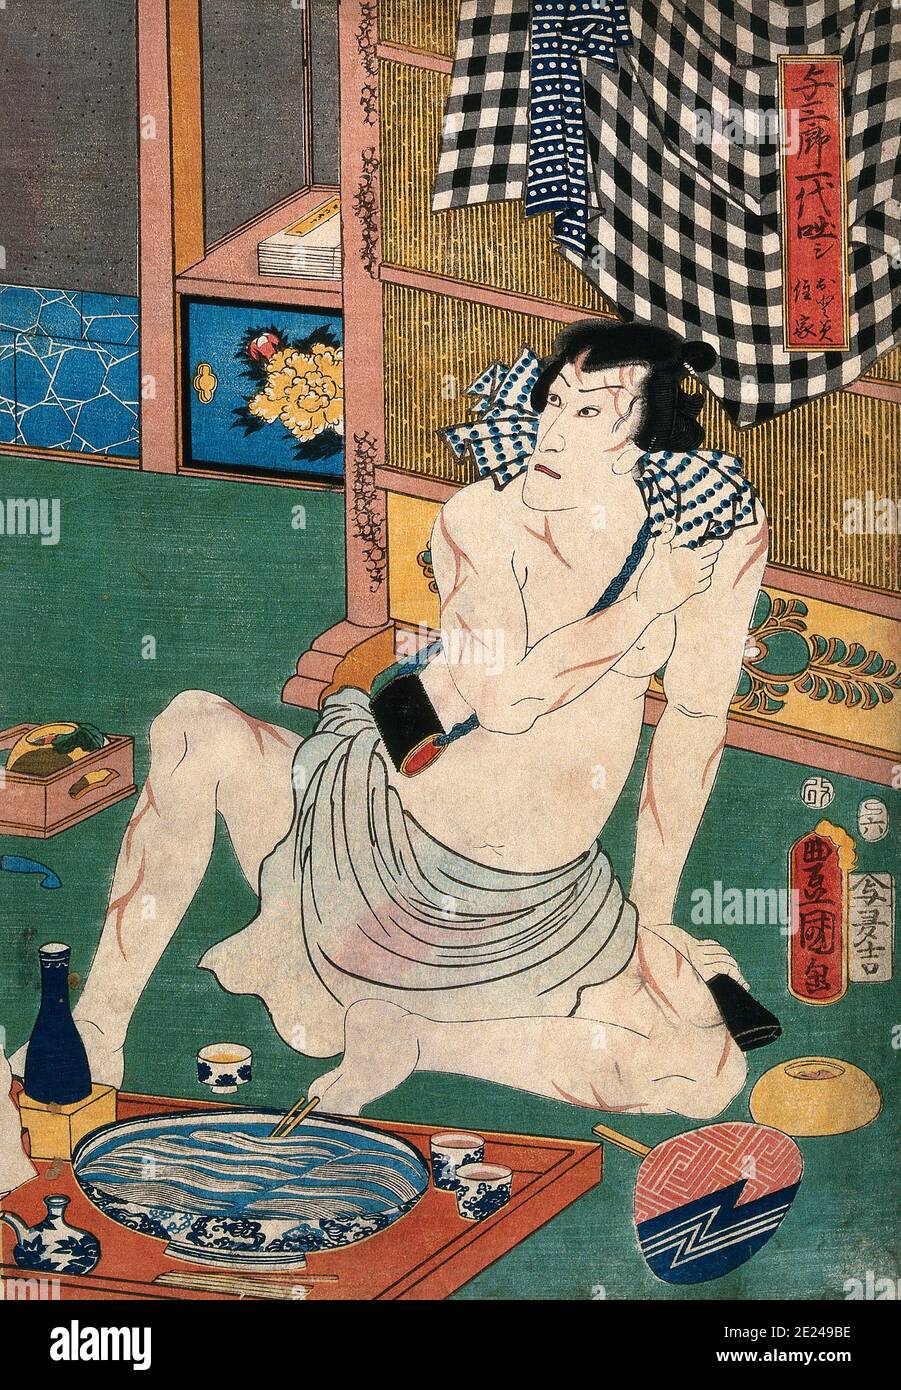 Japan: 'Schauspieler Ichikawa Danjuro VIII. (1823-1854) in einem Lenden-Tuch', Holzschnitt von Utagawa Kunisada (1786-1865), 1857. Ichikawa Danjūrō war ein japanischer Kabuki-Schauspieler der prestigeträchtigen Ichikawa Danjūrō-Linie. Utagawa Kunisada, auch bekannt als Utagawa Toyokuni III, war der populärste und produktivste Designer von Ukiyo-e-Holzschnitten im Japan des 19. Jahrhunderts. Sein Ruf und sein finanzieller Erfolg übertrafen die seiner Mitgenossen bei weitem. Stockfoto